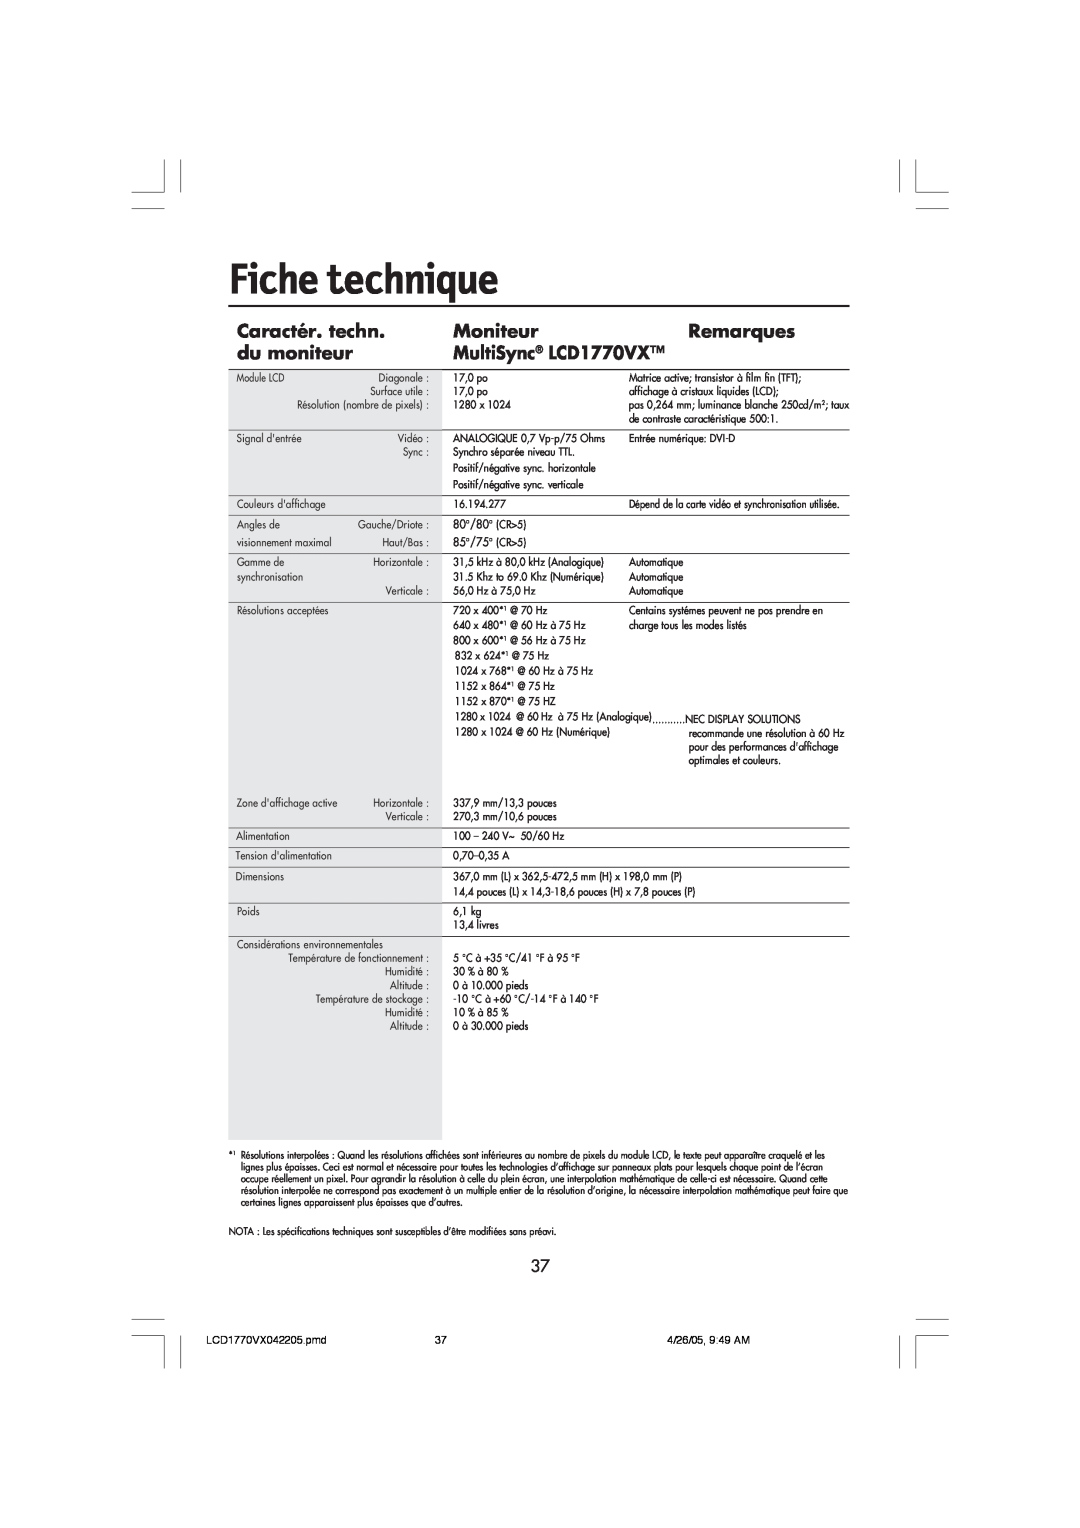 NEC user manual Fiche technique, Caractér. techn, Moniteur, Remarques, du moniteur, MultiSync LCD1770VX 